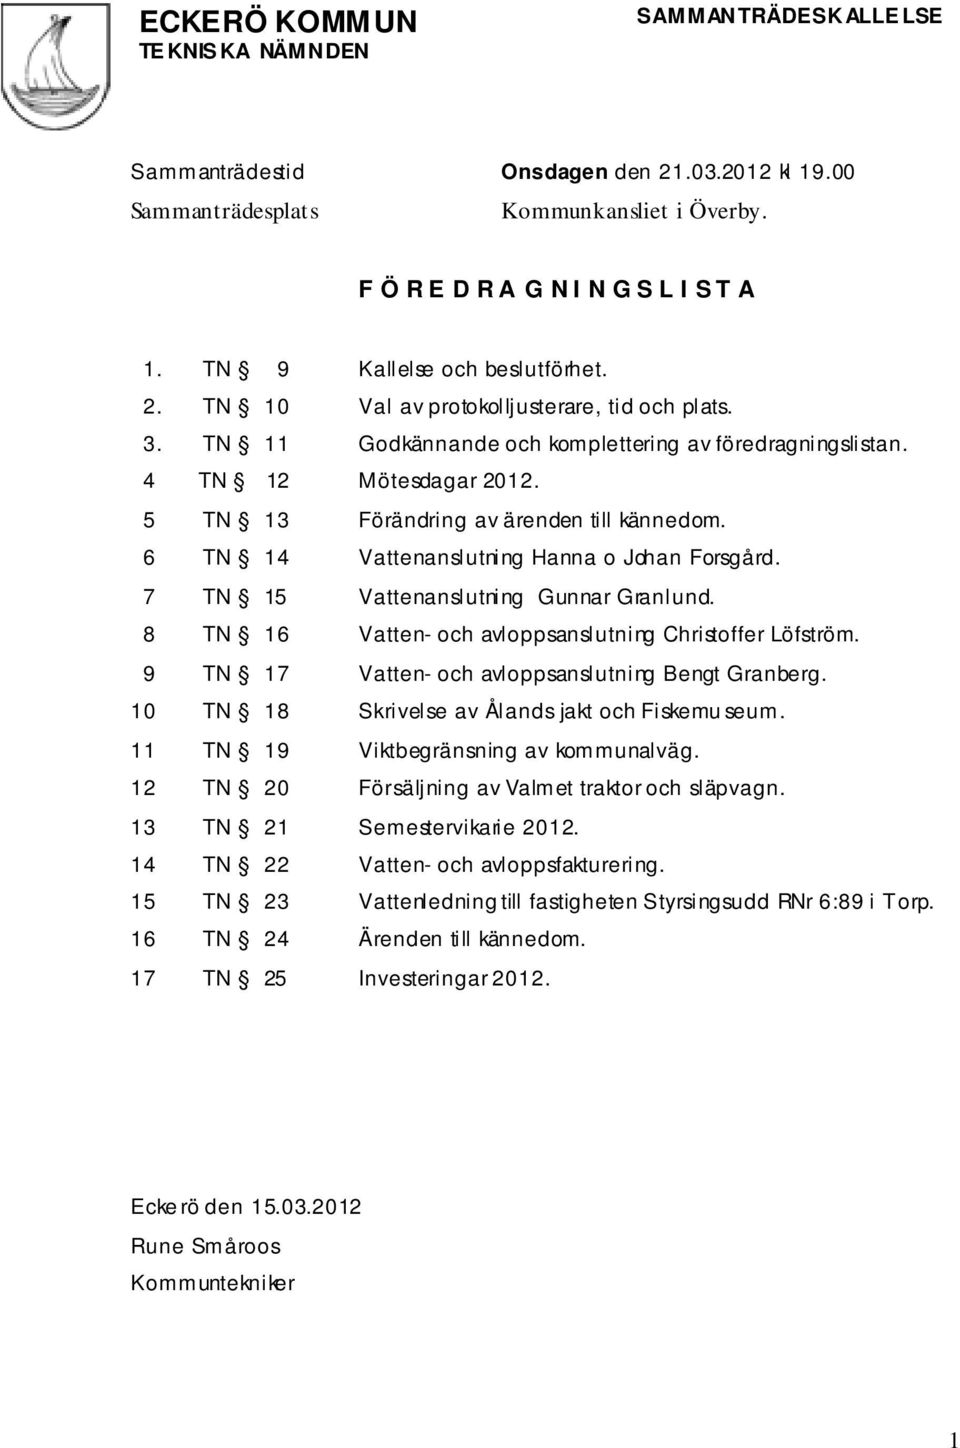 5 TN 13 Förändring av ärenden till kännedom. 6 TN 14 Vattenanslutning Hanna o Johan Forsgård. 7 TN 15 Vattenanslutning Gunnar Granlund. 8 TN 16 Vatten- och avloppsanslutning Christoffer Löfström.